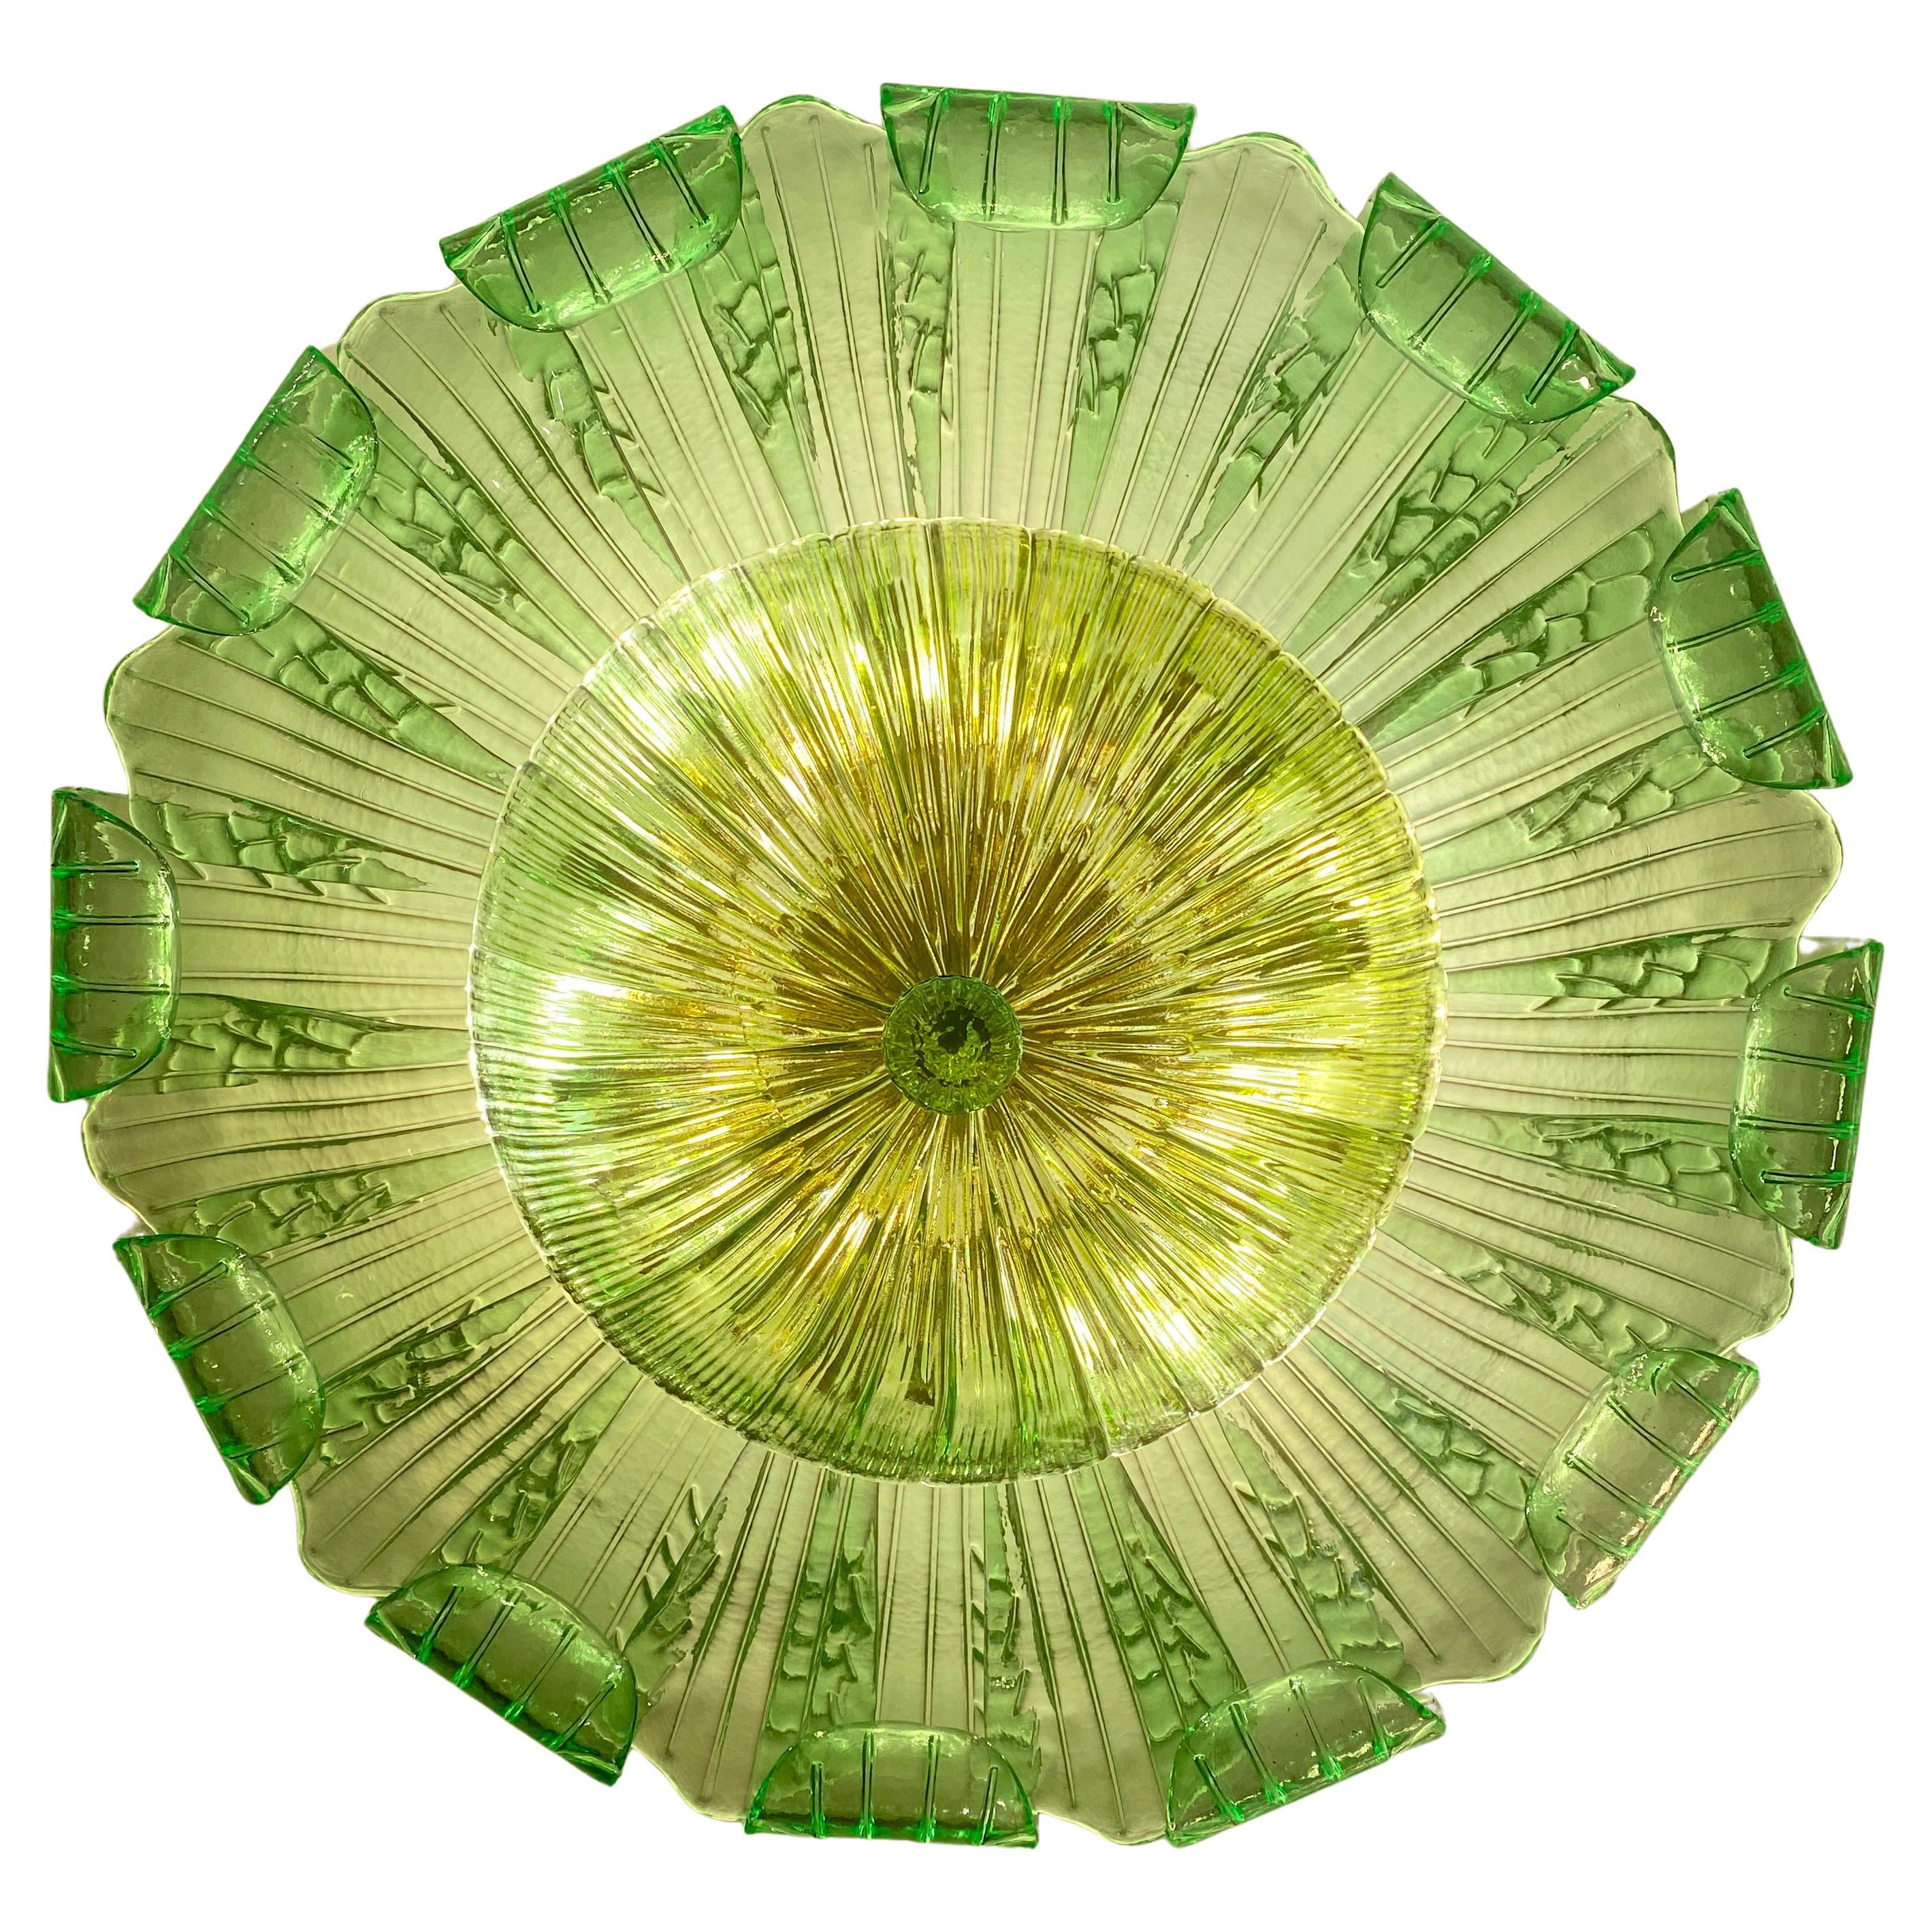 Realisiert in reiner smaragdgrüner Farbe Murano Glas besteht aus 24 großen mundgeblasenen Blättern.
 Die Struktur ist aus vergoldetem Metall. Neun E27  Glühbirnen  ein magisches Licht verbreiten.
 Wattleistung 4-6 W 
 Gewicht: 28 kg

Auch als Paar